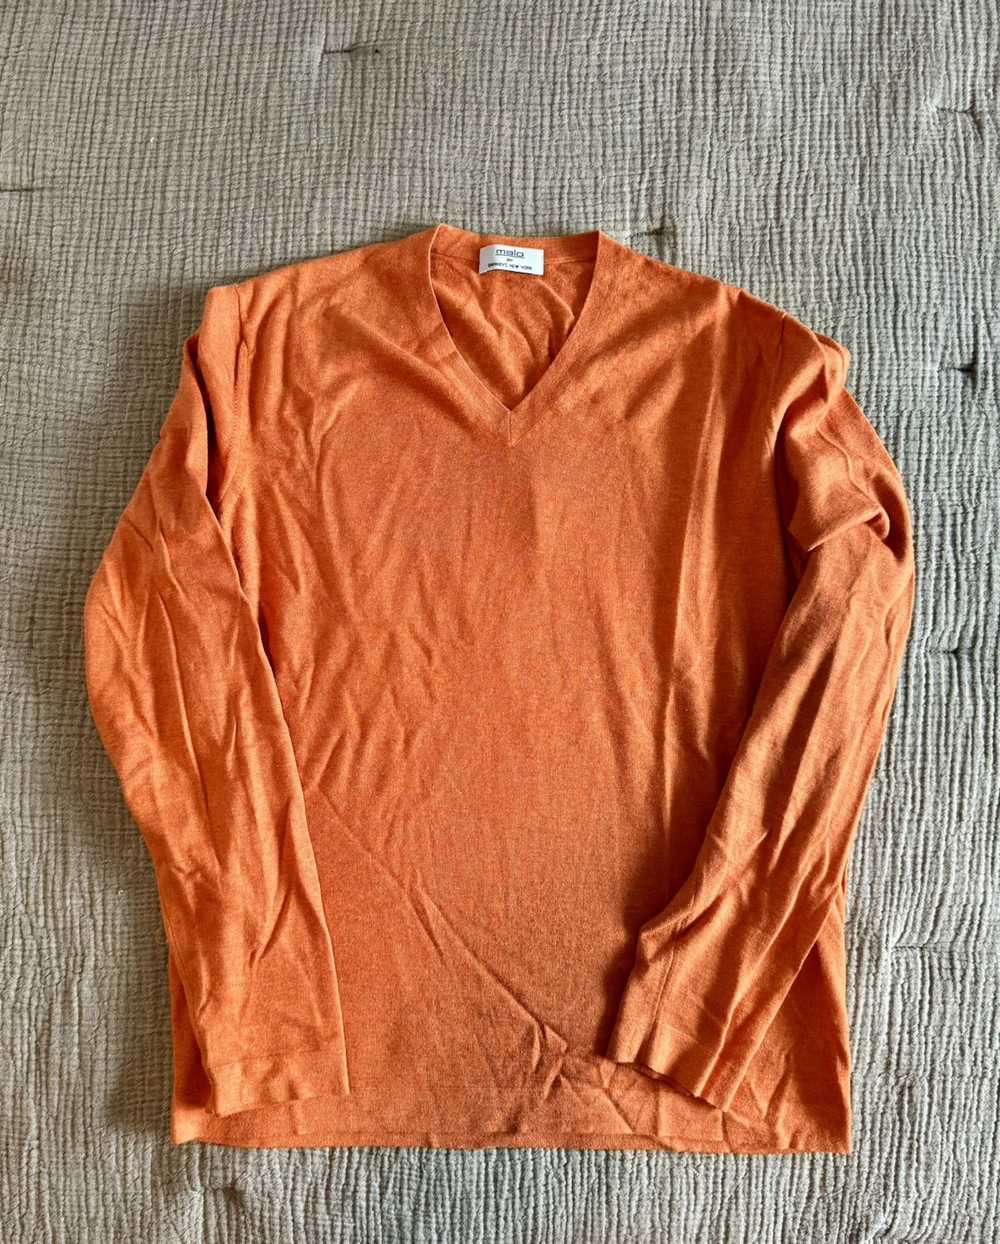 Malo Malo V-Neck Sweater in 60/40 Cashmere-Cotton… - image 1